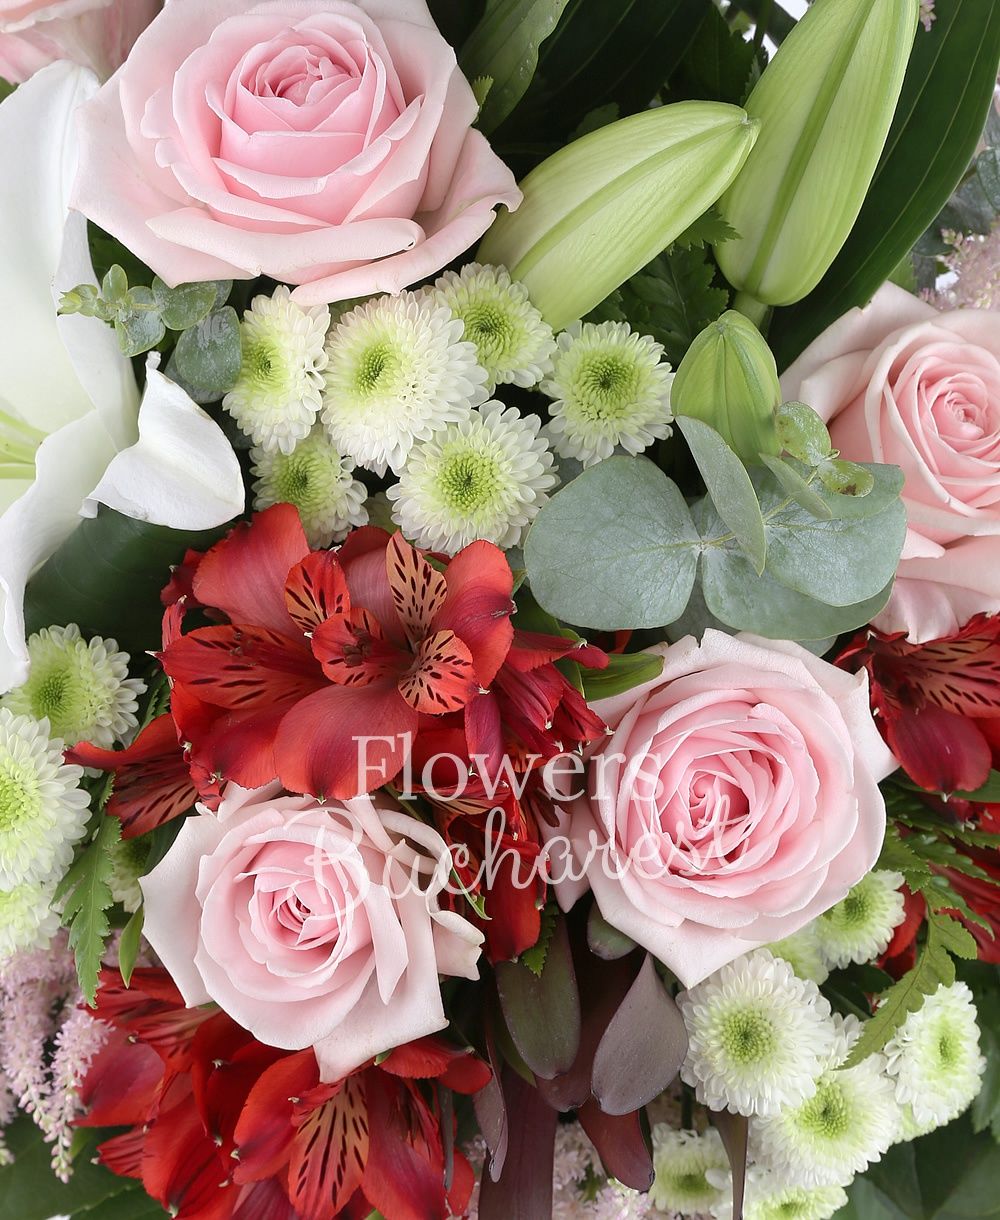 2 white lilies, 6 pink roses, 3 white santini, 3 red alstroemeria, 3 leucadendron, 4 pink astranția, greenery